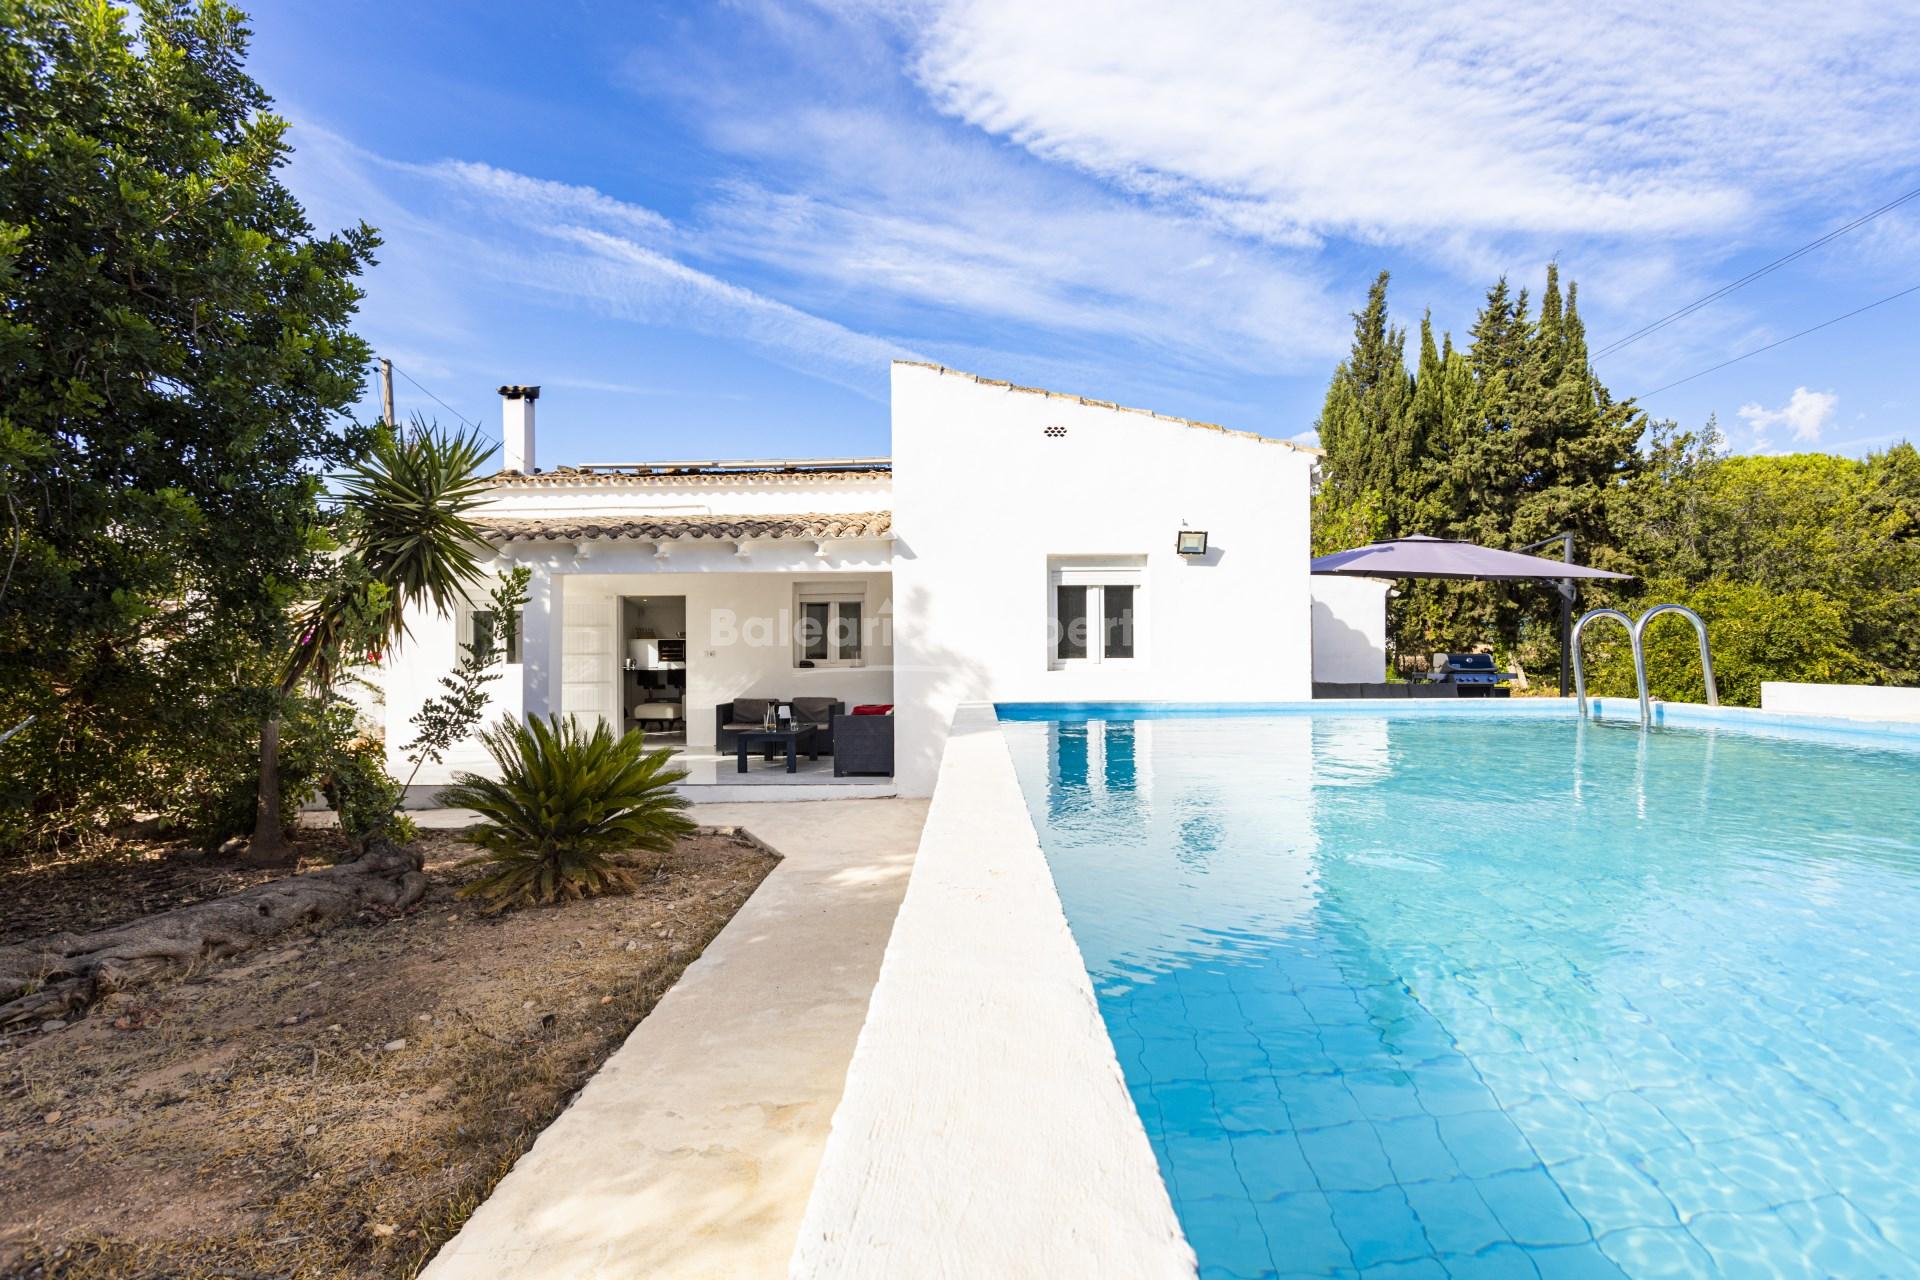 Casa de campo renovada en venta cerca de Llucmajor, Mallorca